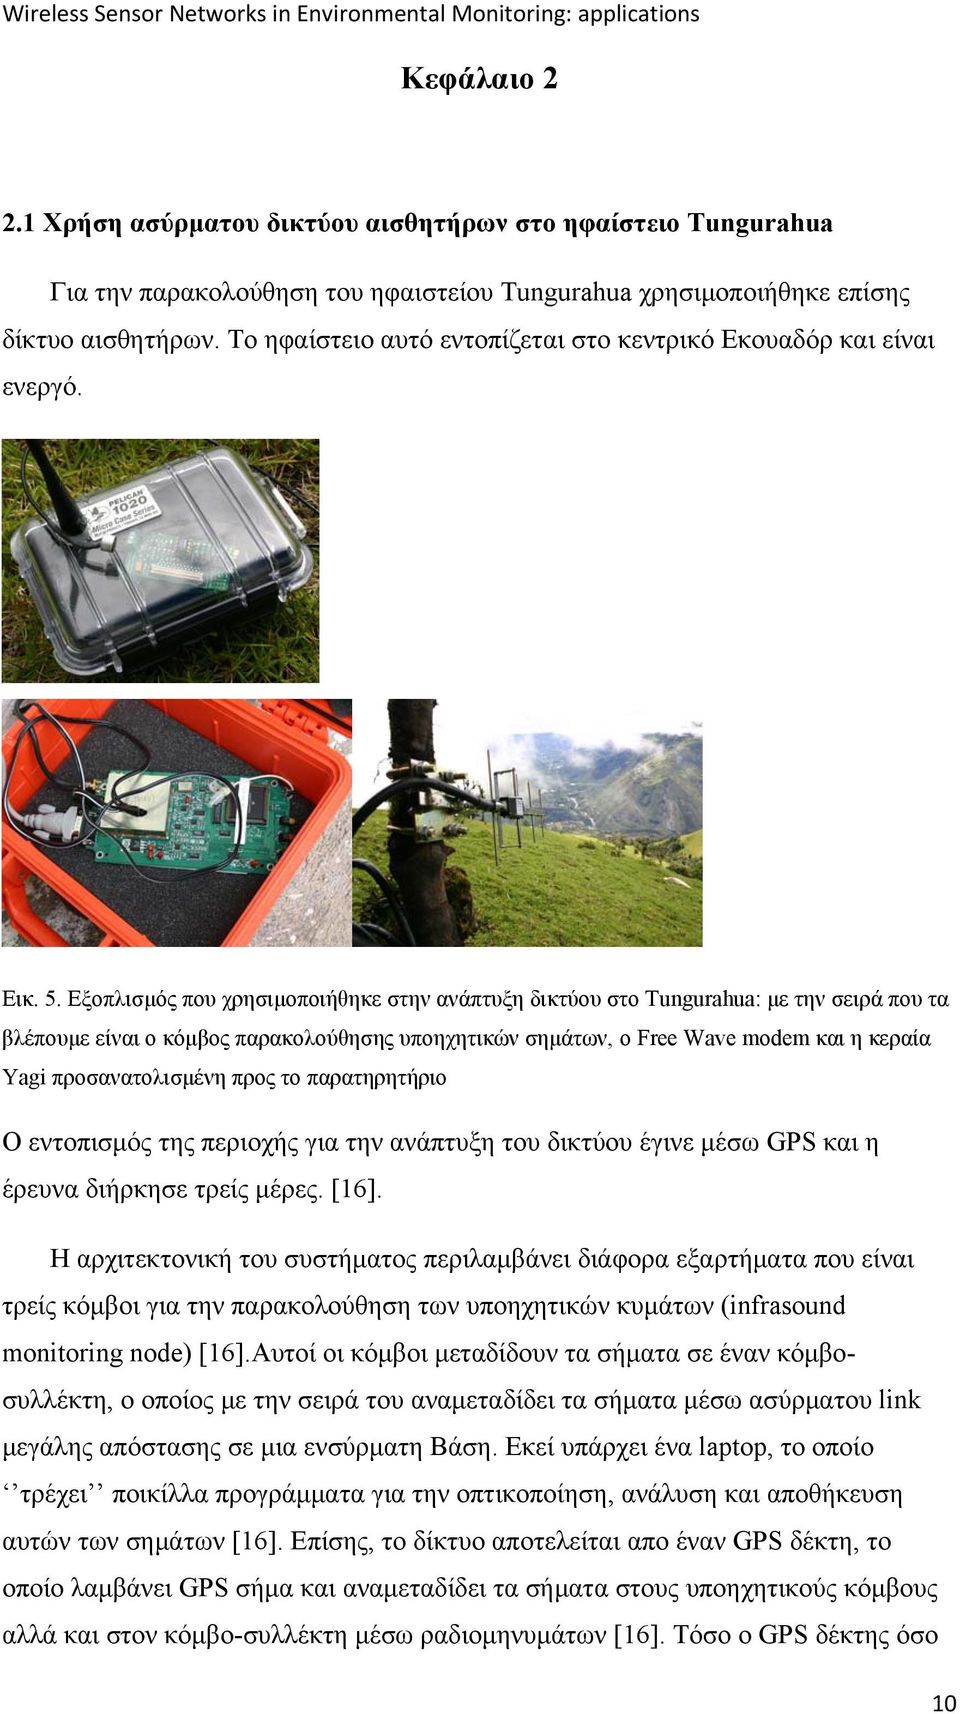 Εξοπλισμός που χρησιμοποιήθηκε στην ανάπτυξη δικτύου στο Tungurahua: με την σειρά που τα βλέπουμε είναι ο κόμβος παρακολούθησης υποηχητικών σημάτων, ο Free Wave modem και η κεραία Yagi